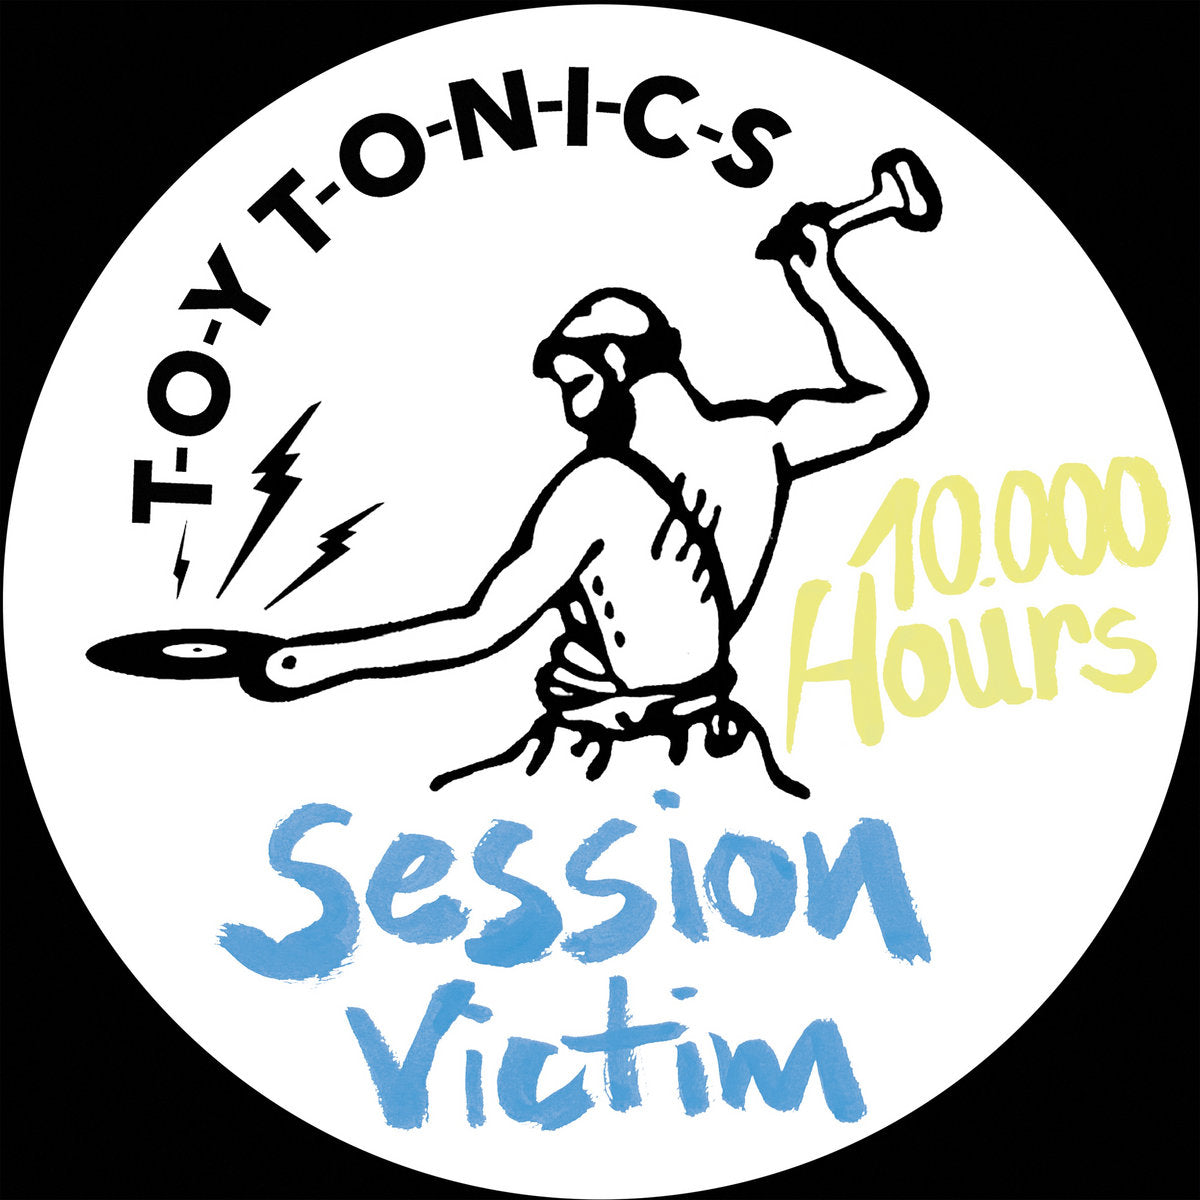 Session Victim - 10.000 Hours [Toy Tonics]